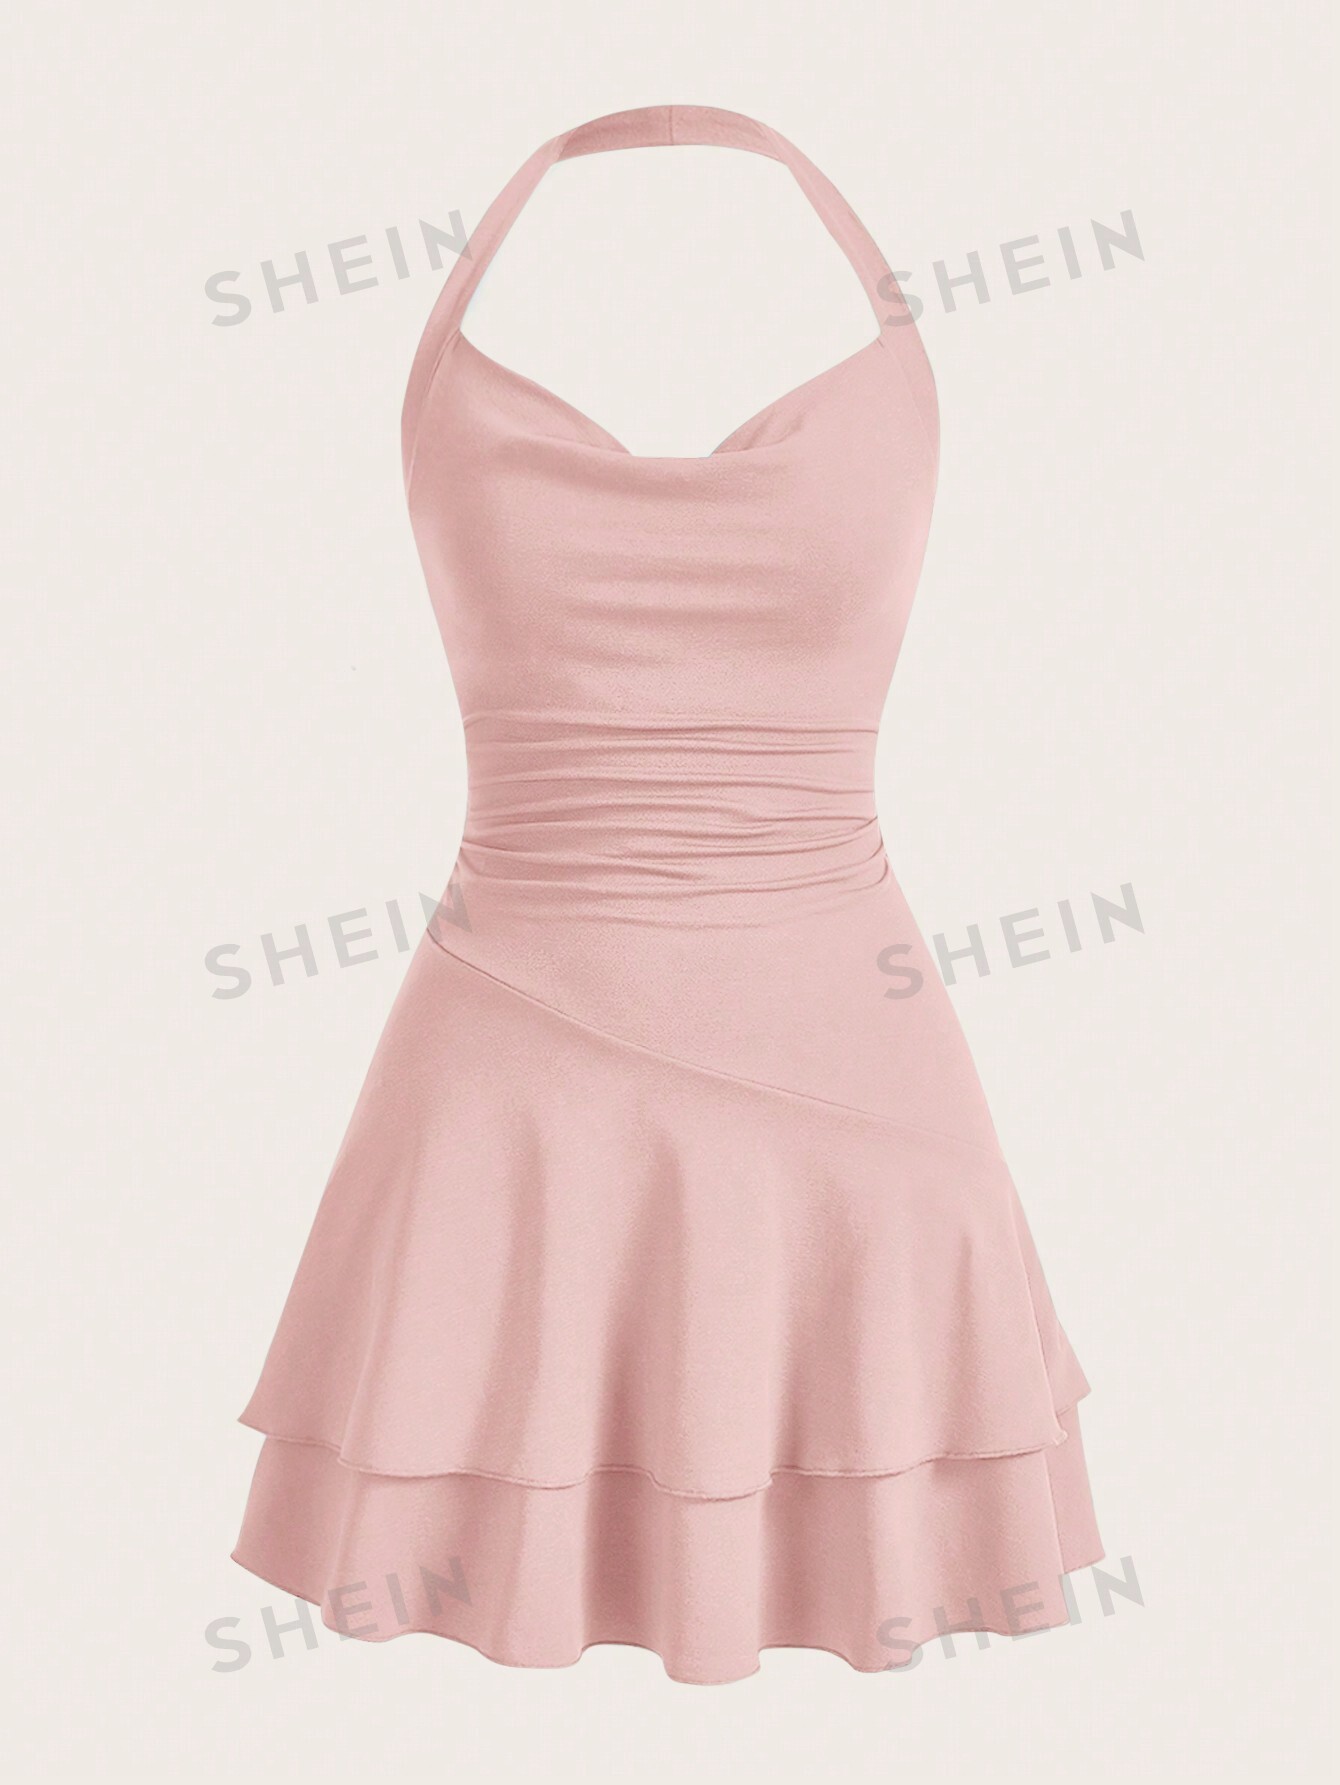 вязаное облегающее платье миди из хлопка цвет – бежевый SHEIN MOD однотонное женское платье с бретелькой на шее и многослойным подолом, пыльный розовый